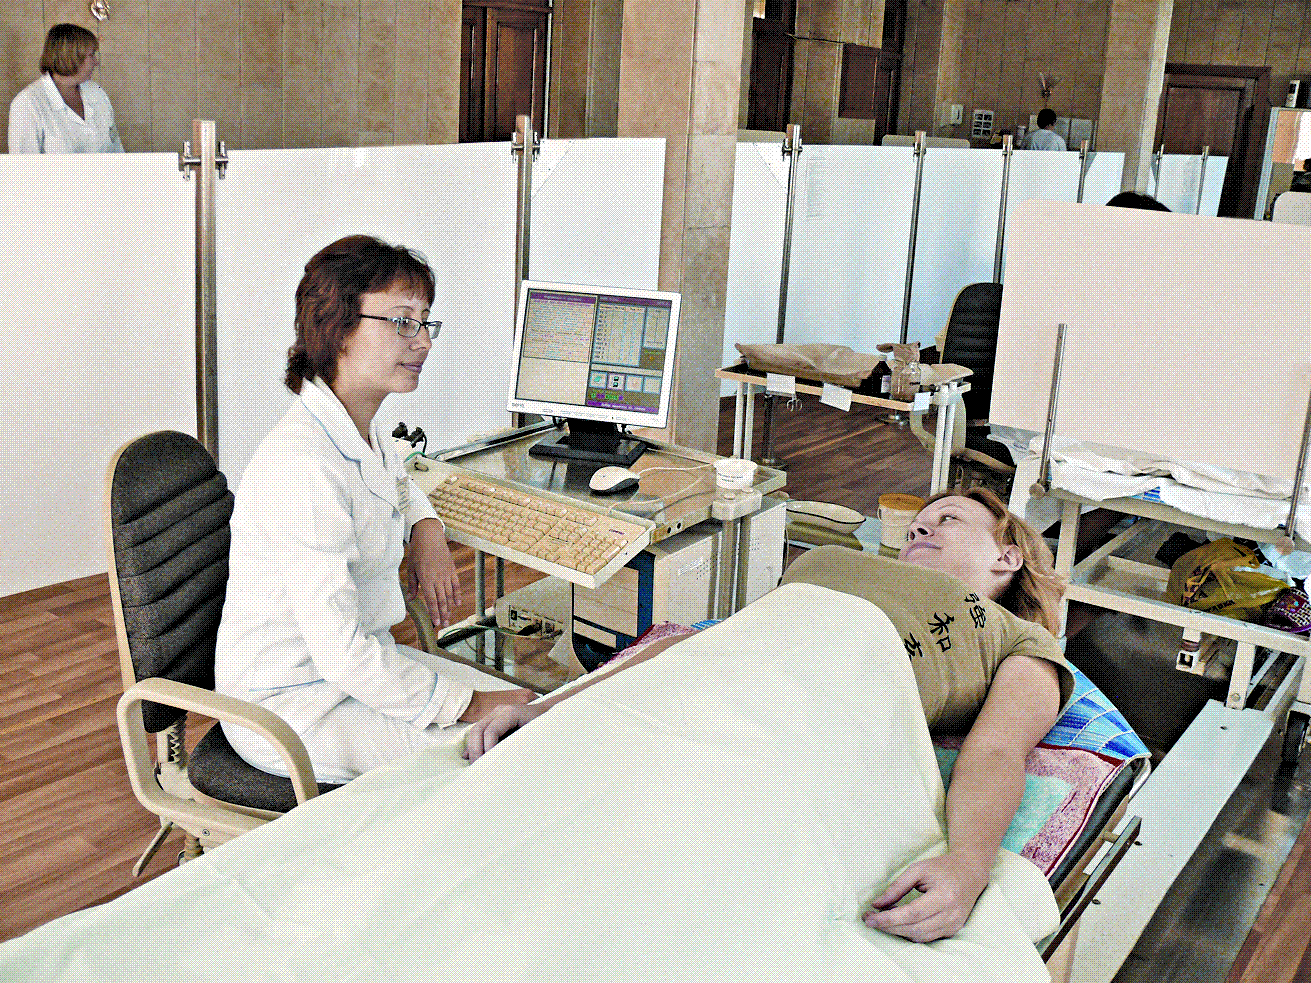 "Диагностический кабинет Республиканского центра восстановительной медицины и реабилитации. Чебоксары. 2009."